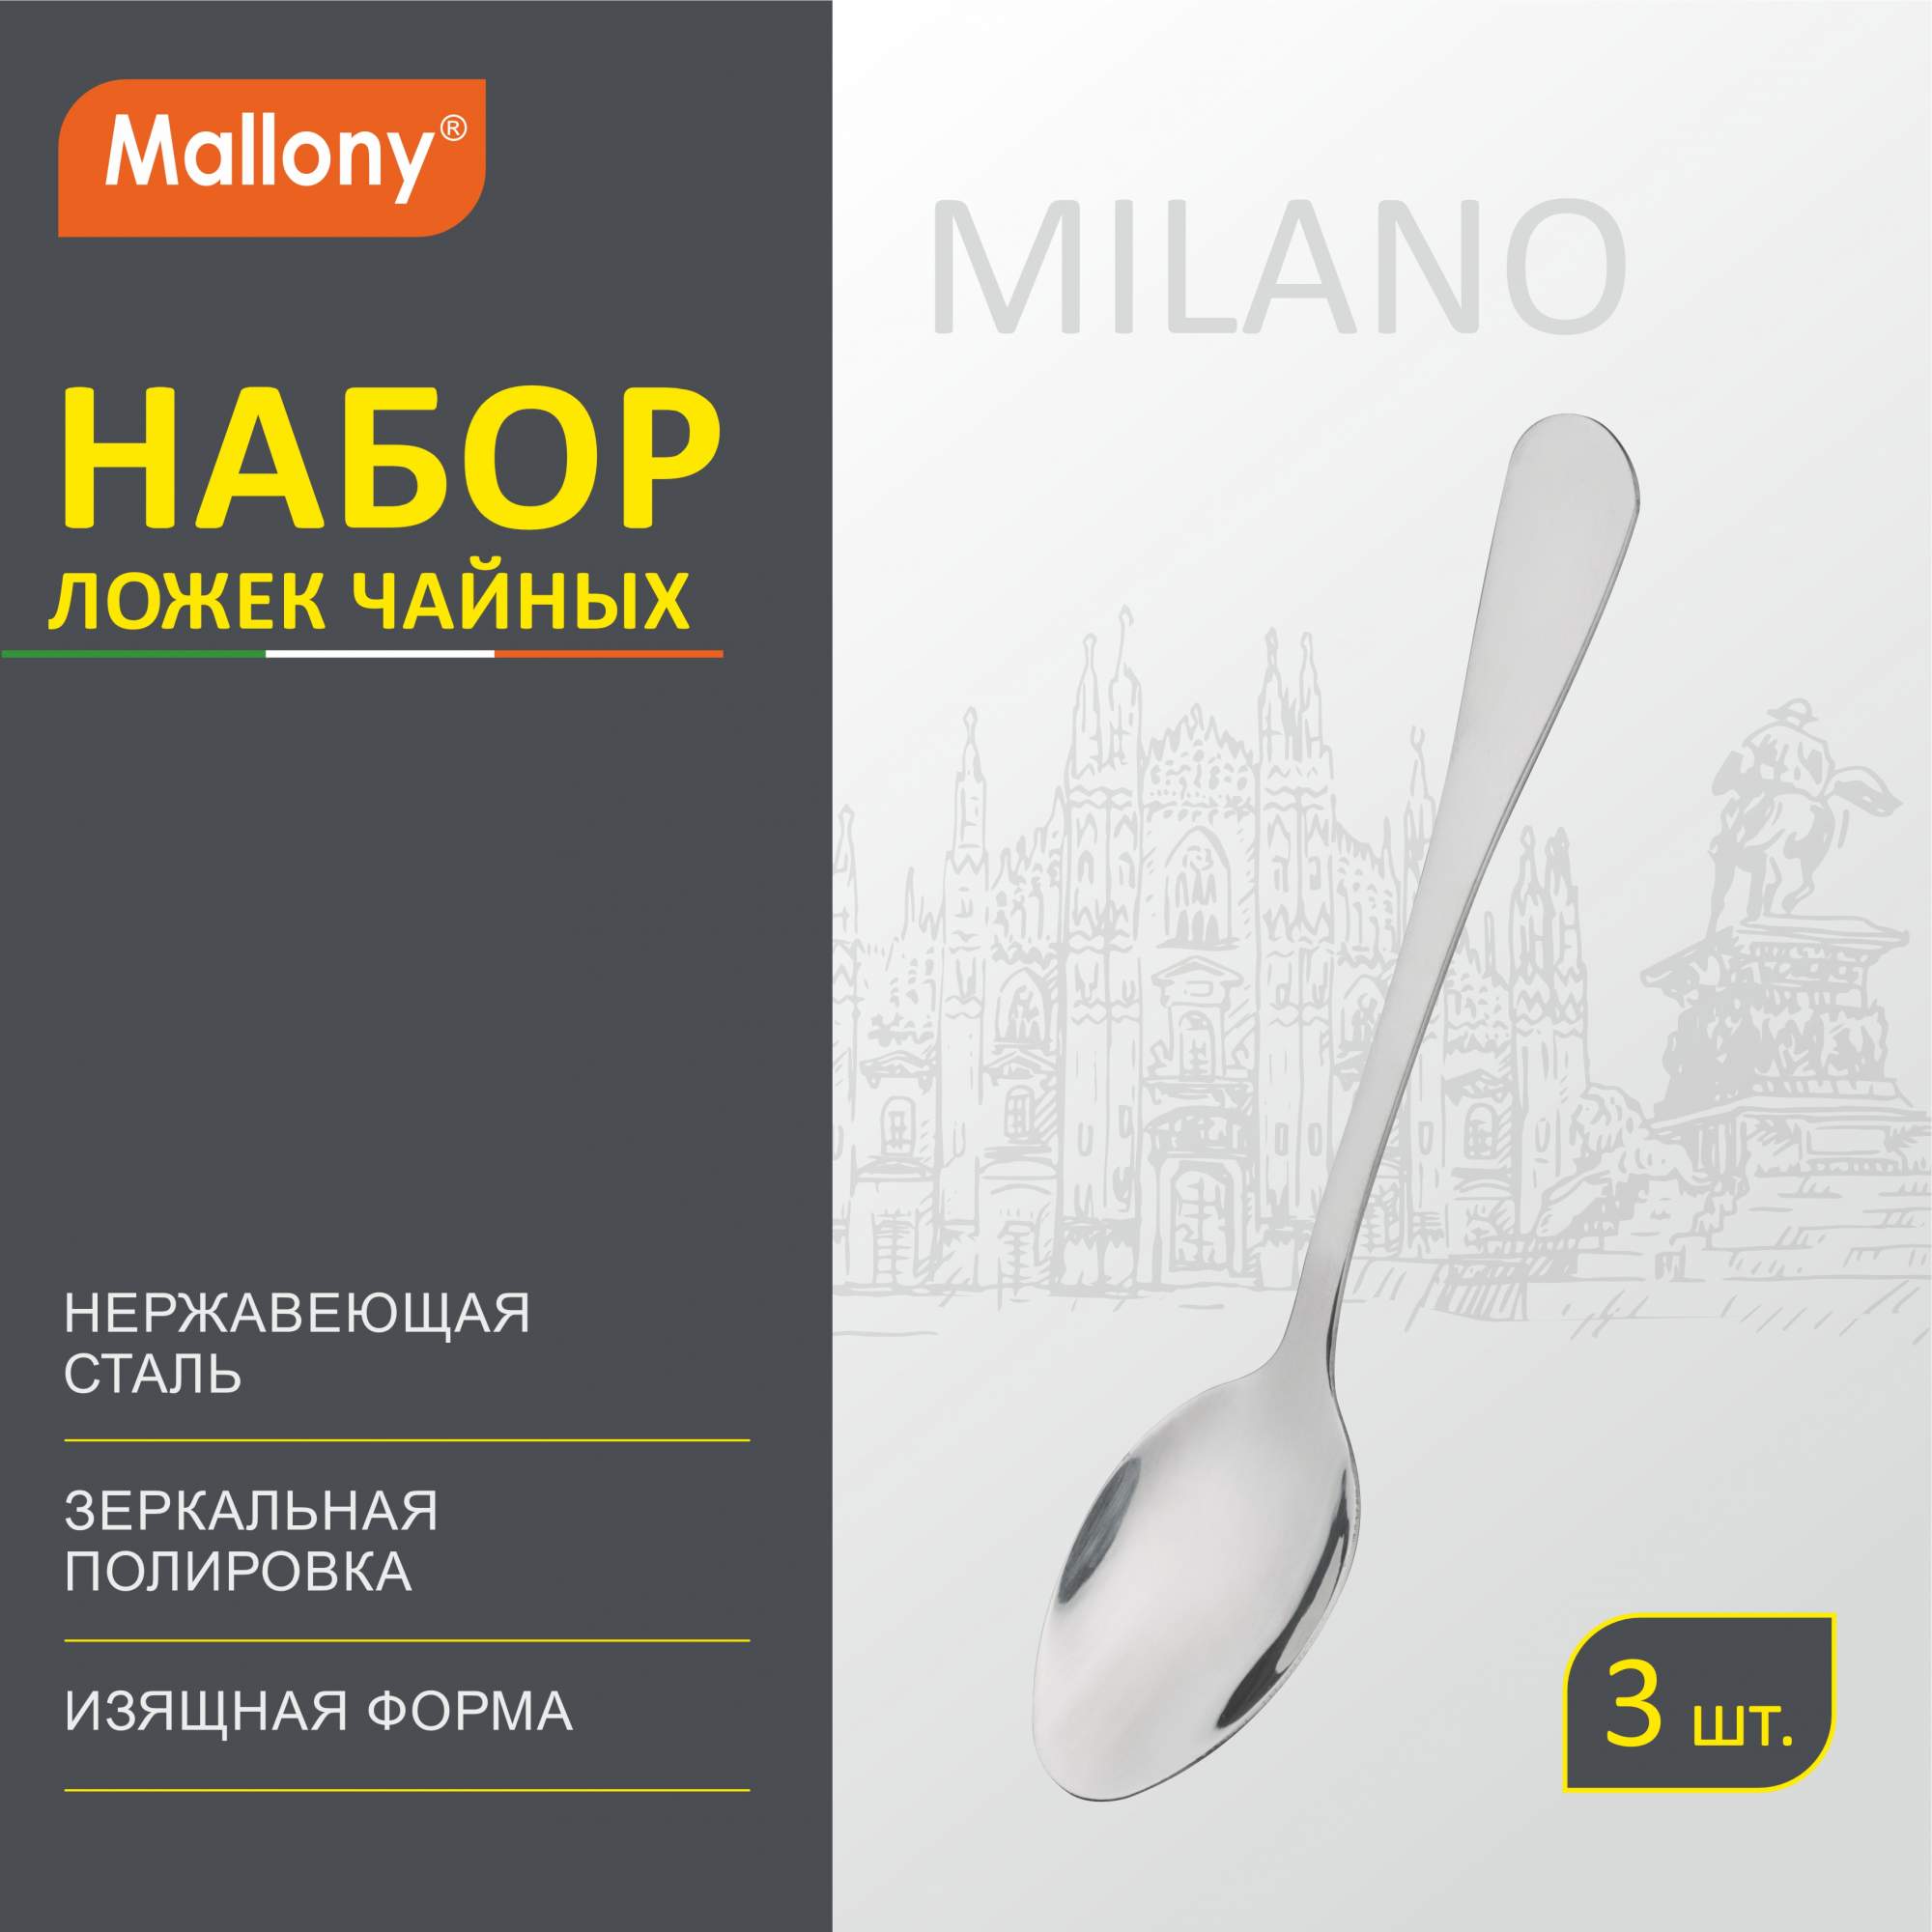 Набор ложек чайных Mallony Milano, 3 шт. купить в интернет-магазине, цены на Мегамаркет